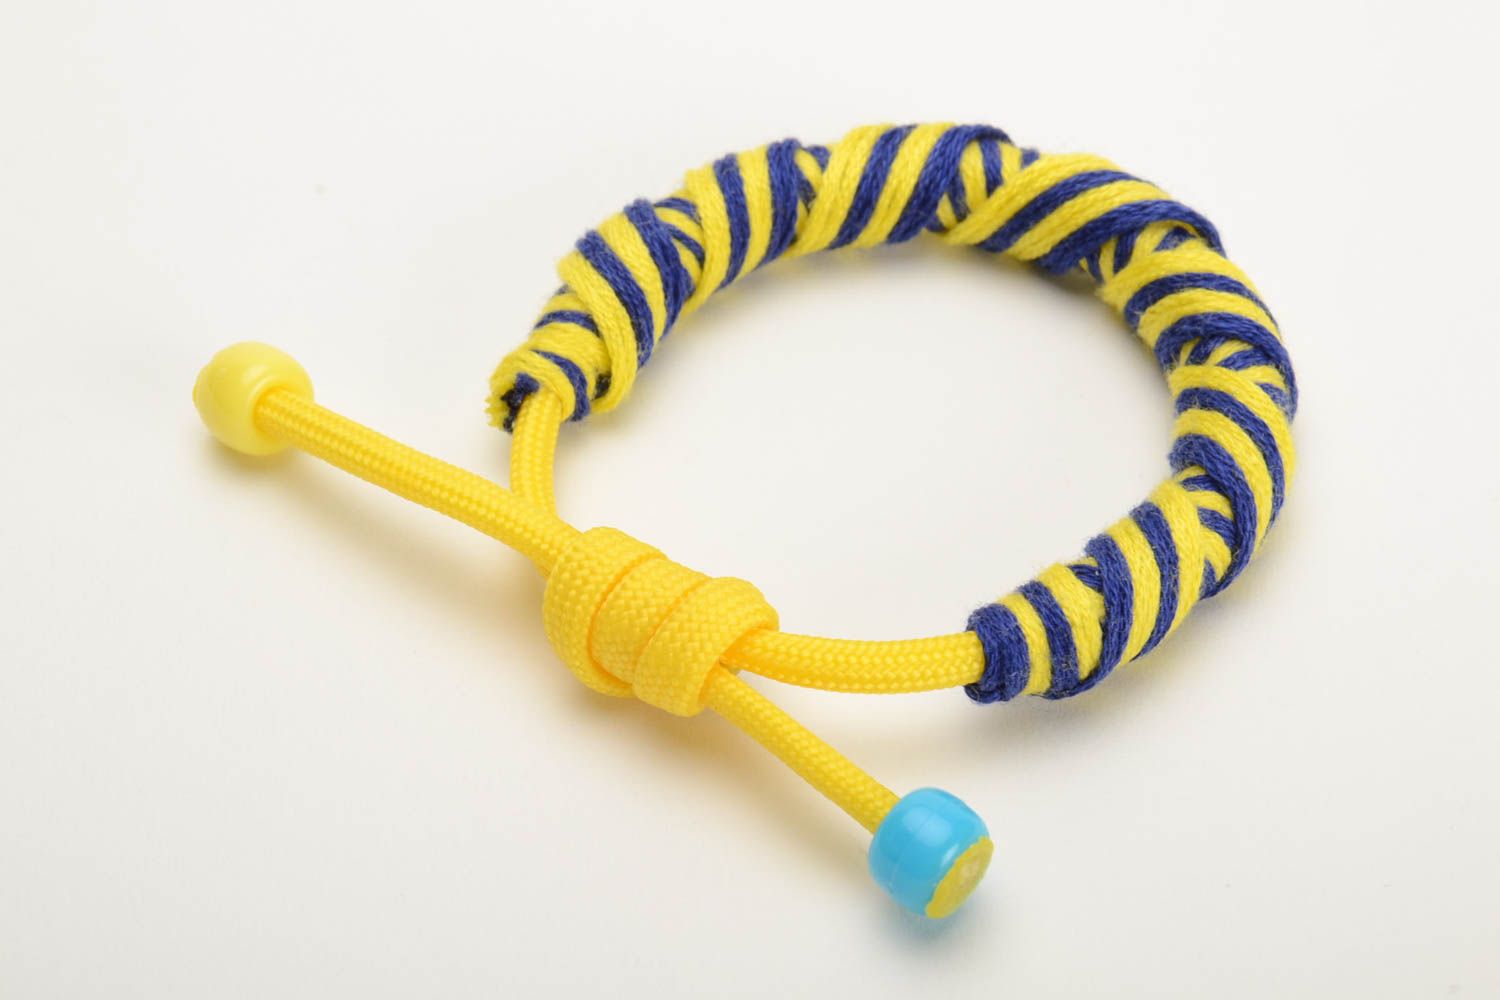 Браслет из ниток мулине плетеный с паракордовым шнурком желтый с синим хенд мэйд фото 2